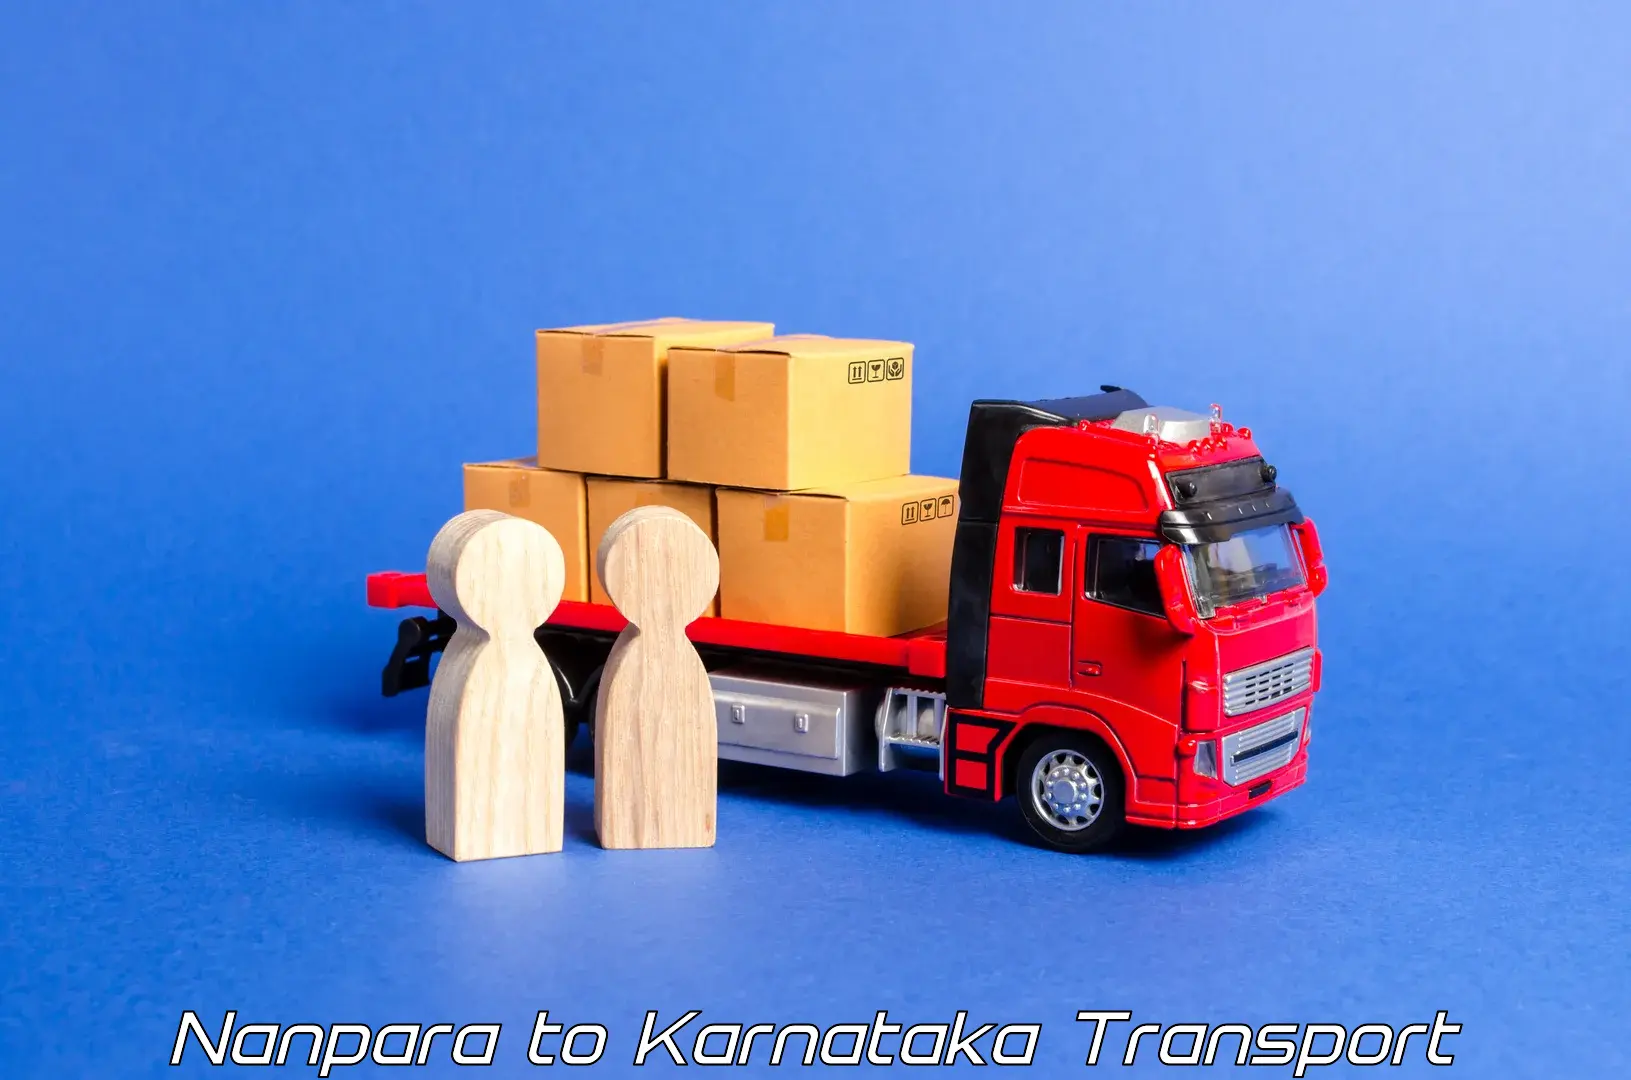 Vehicle transport services Nanpara to Shikaripur